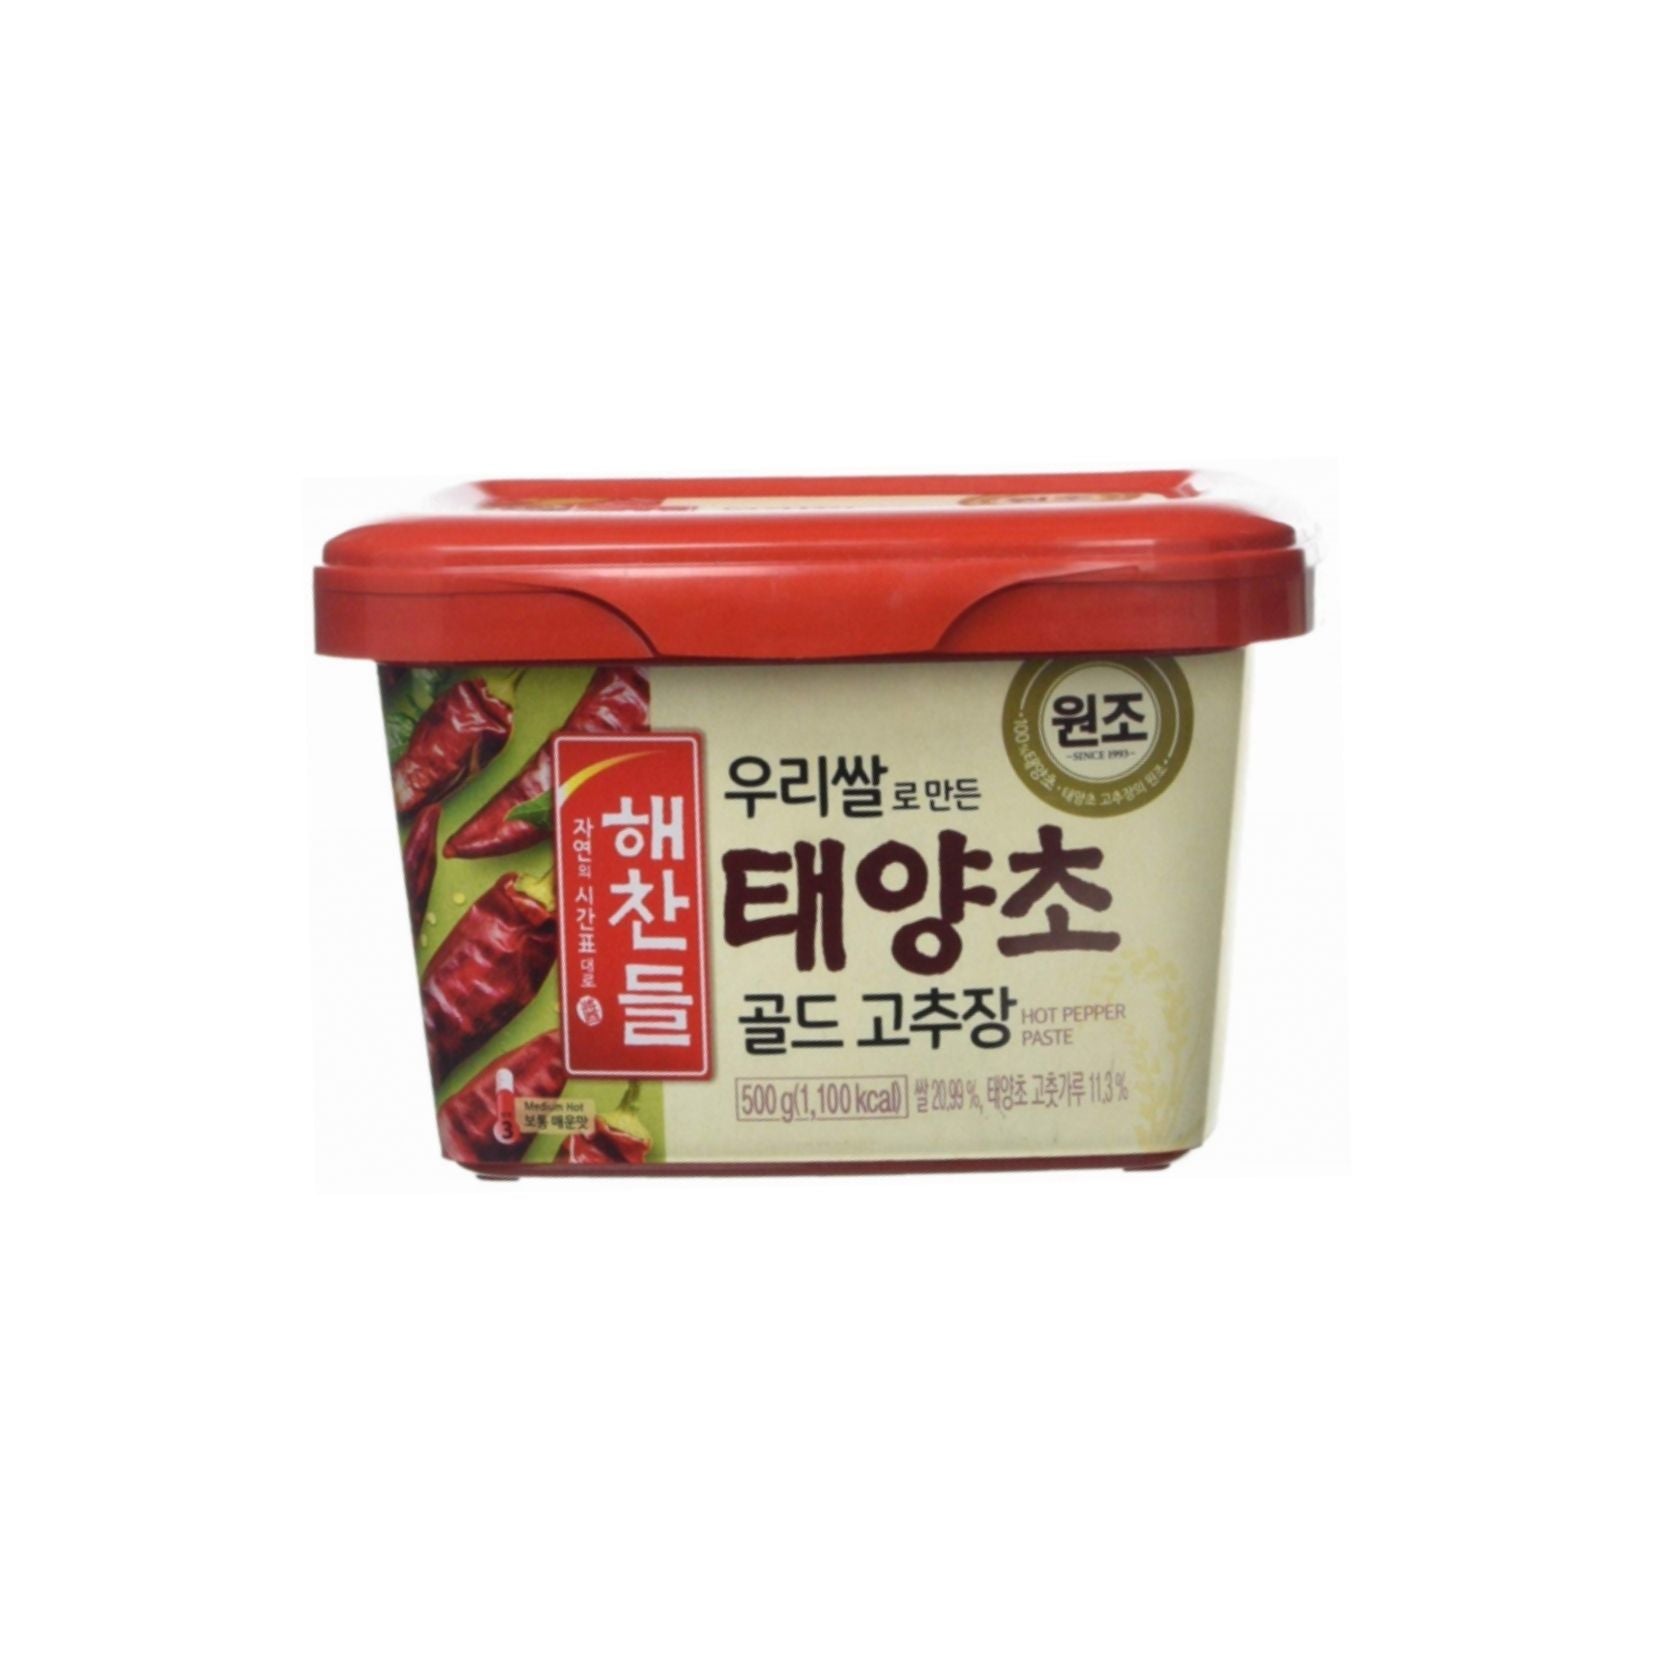 Gochujang Red Pepper Korean Paste - 1kg